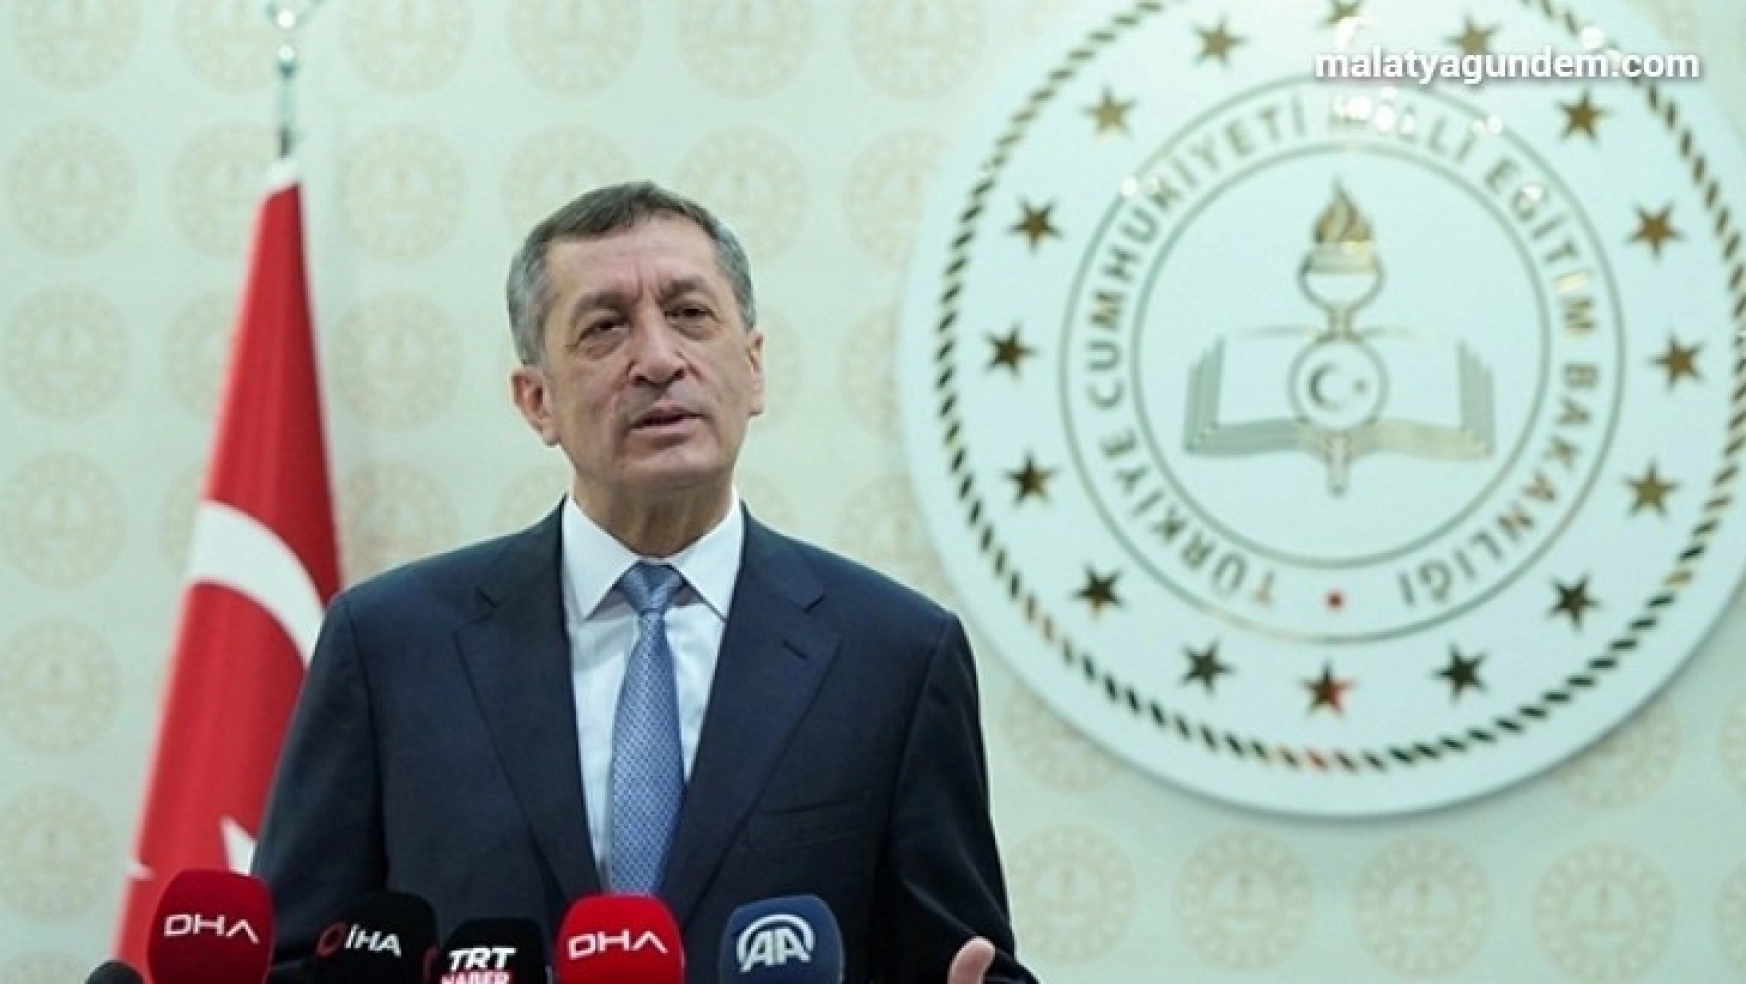 Milli Eğitim Bakanı Selçuk'tan ara tatil açıklaması